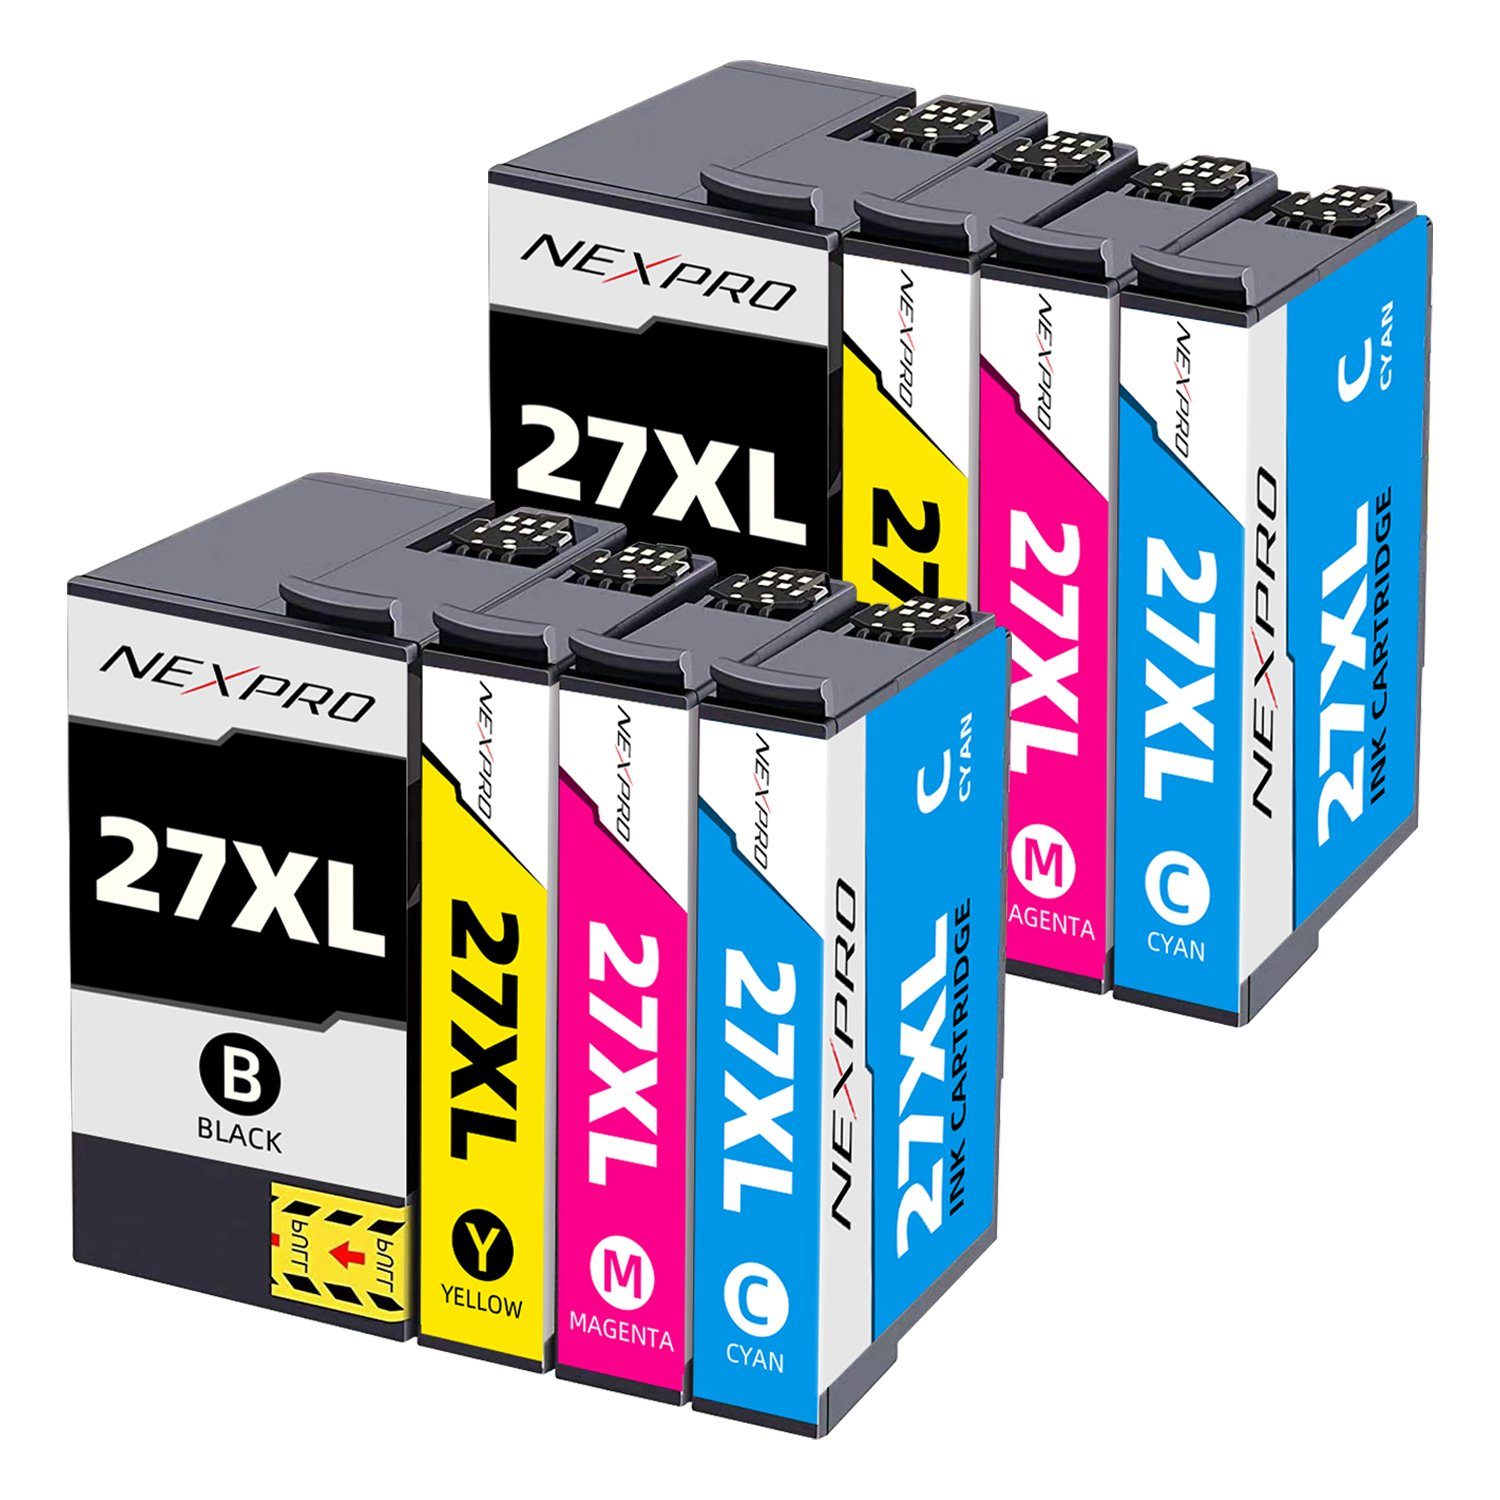 NEXPRO Epson 27 XL Druckerpatronen für WF3620DWF WF3640DTWF WF7110DTW, 8er  Tintenpatrone (Packung, Epson 27 XL Druckerpatronen Multipack schwarz/ magenta/cyan/yellow) | Druckerpatronen & Toner